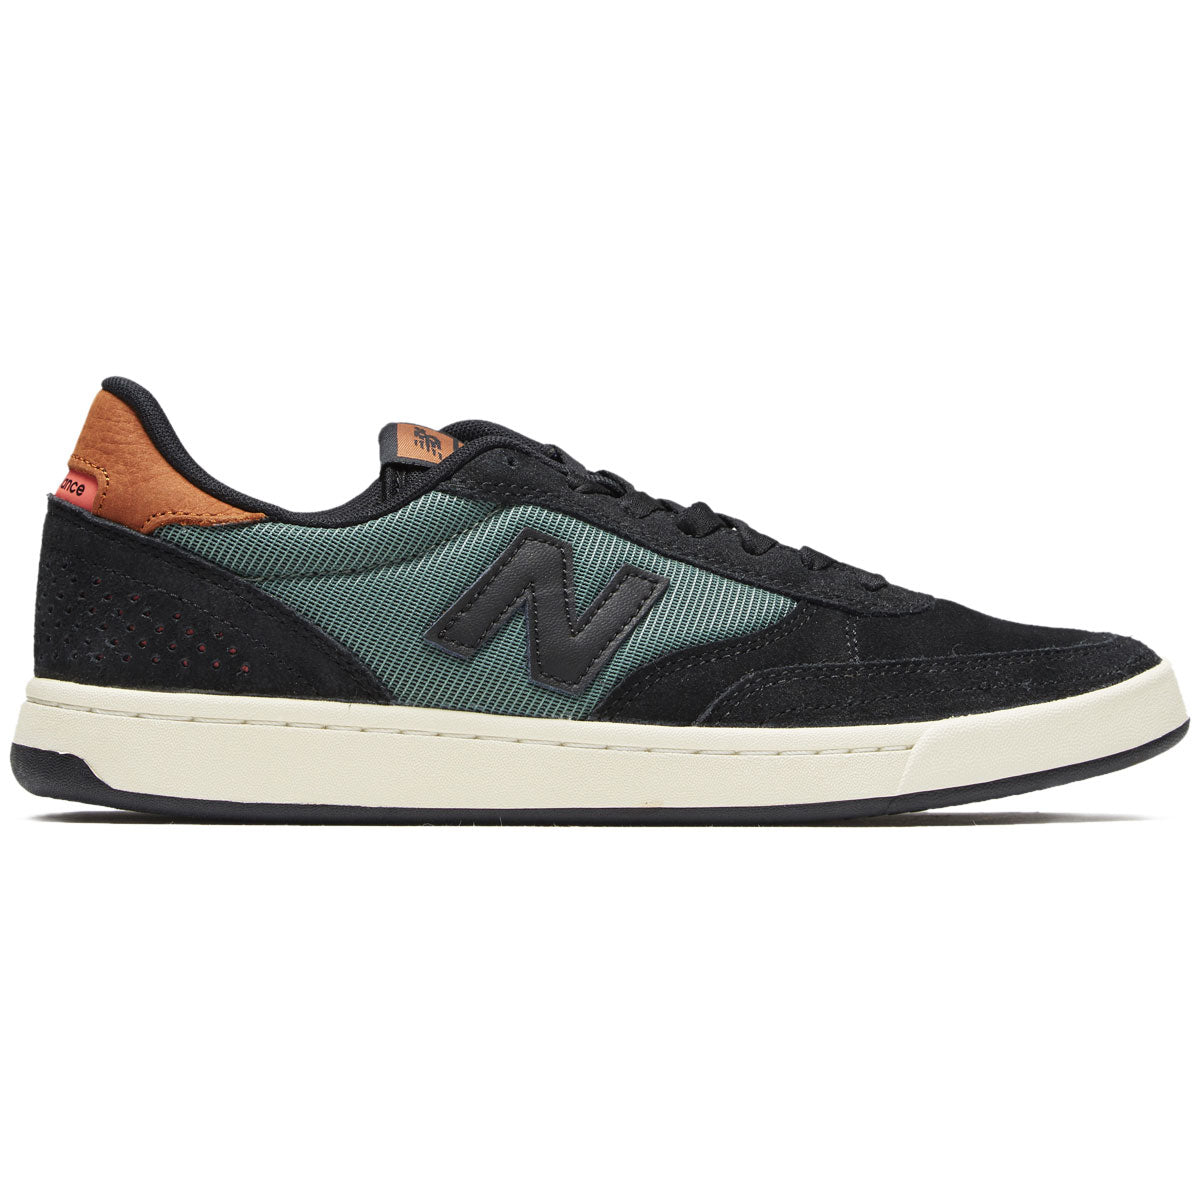 New Balance 440 Shoes - Black/Olive image 1